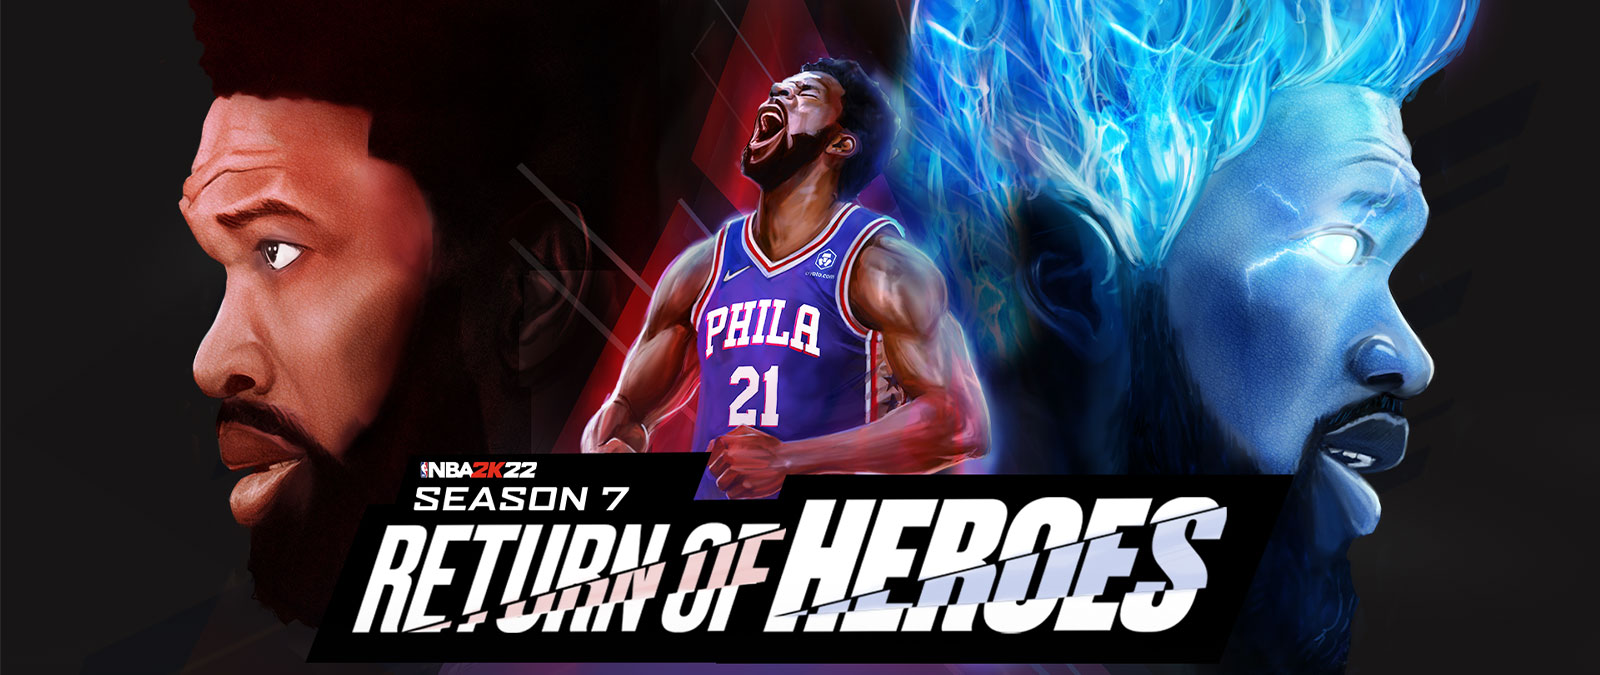 Dans la Season 7 de NBA 2K22, Return of Heros, un joueur de Philadelphie hurle en direction du ciel et se déchaîne avec des flammes bleues.